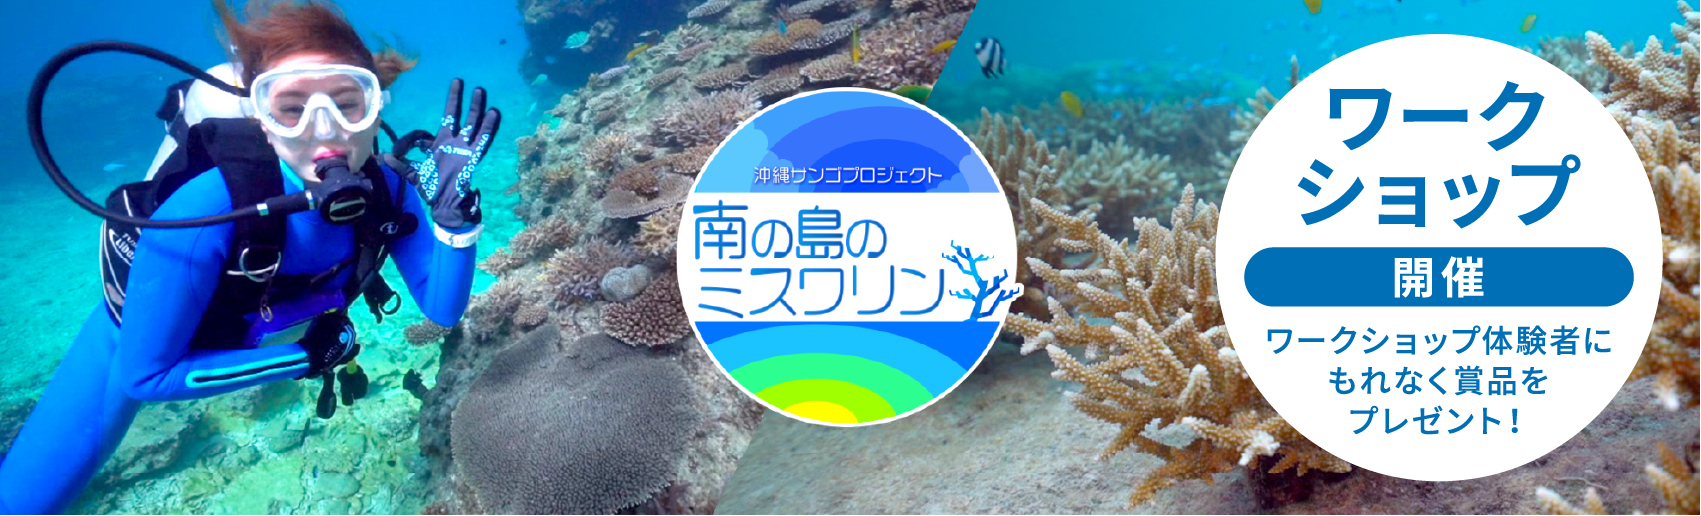 沖縄サンゴ保全プロジェクト